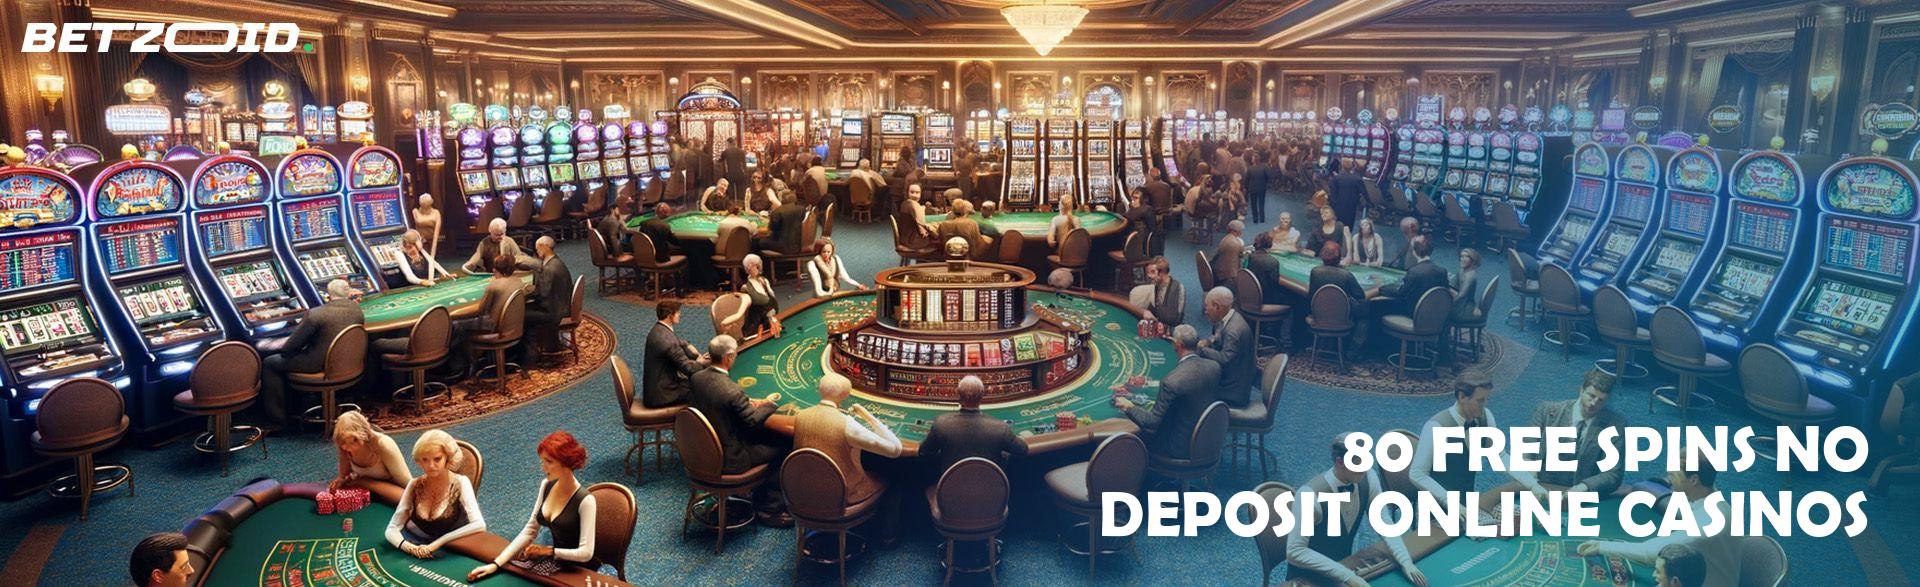 80 Free Spins No Deposit Online Casinos.